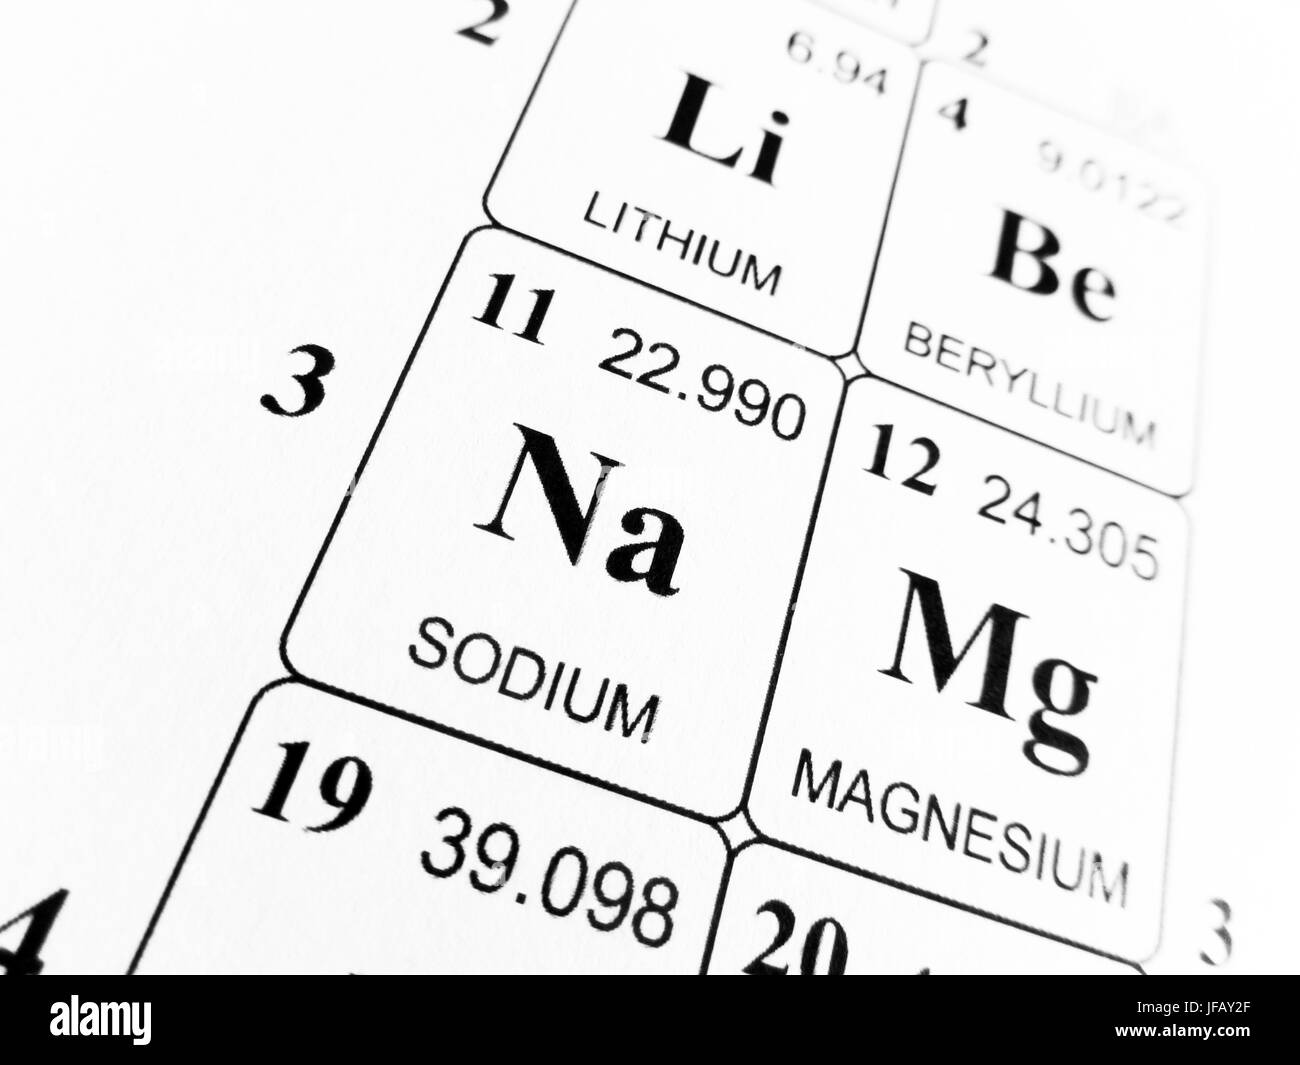 Relative atomic mass of sodium carbonate